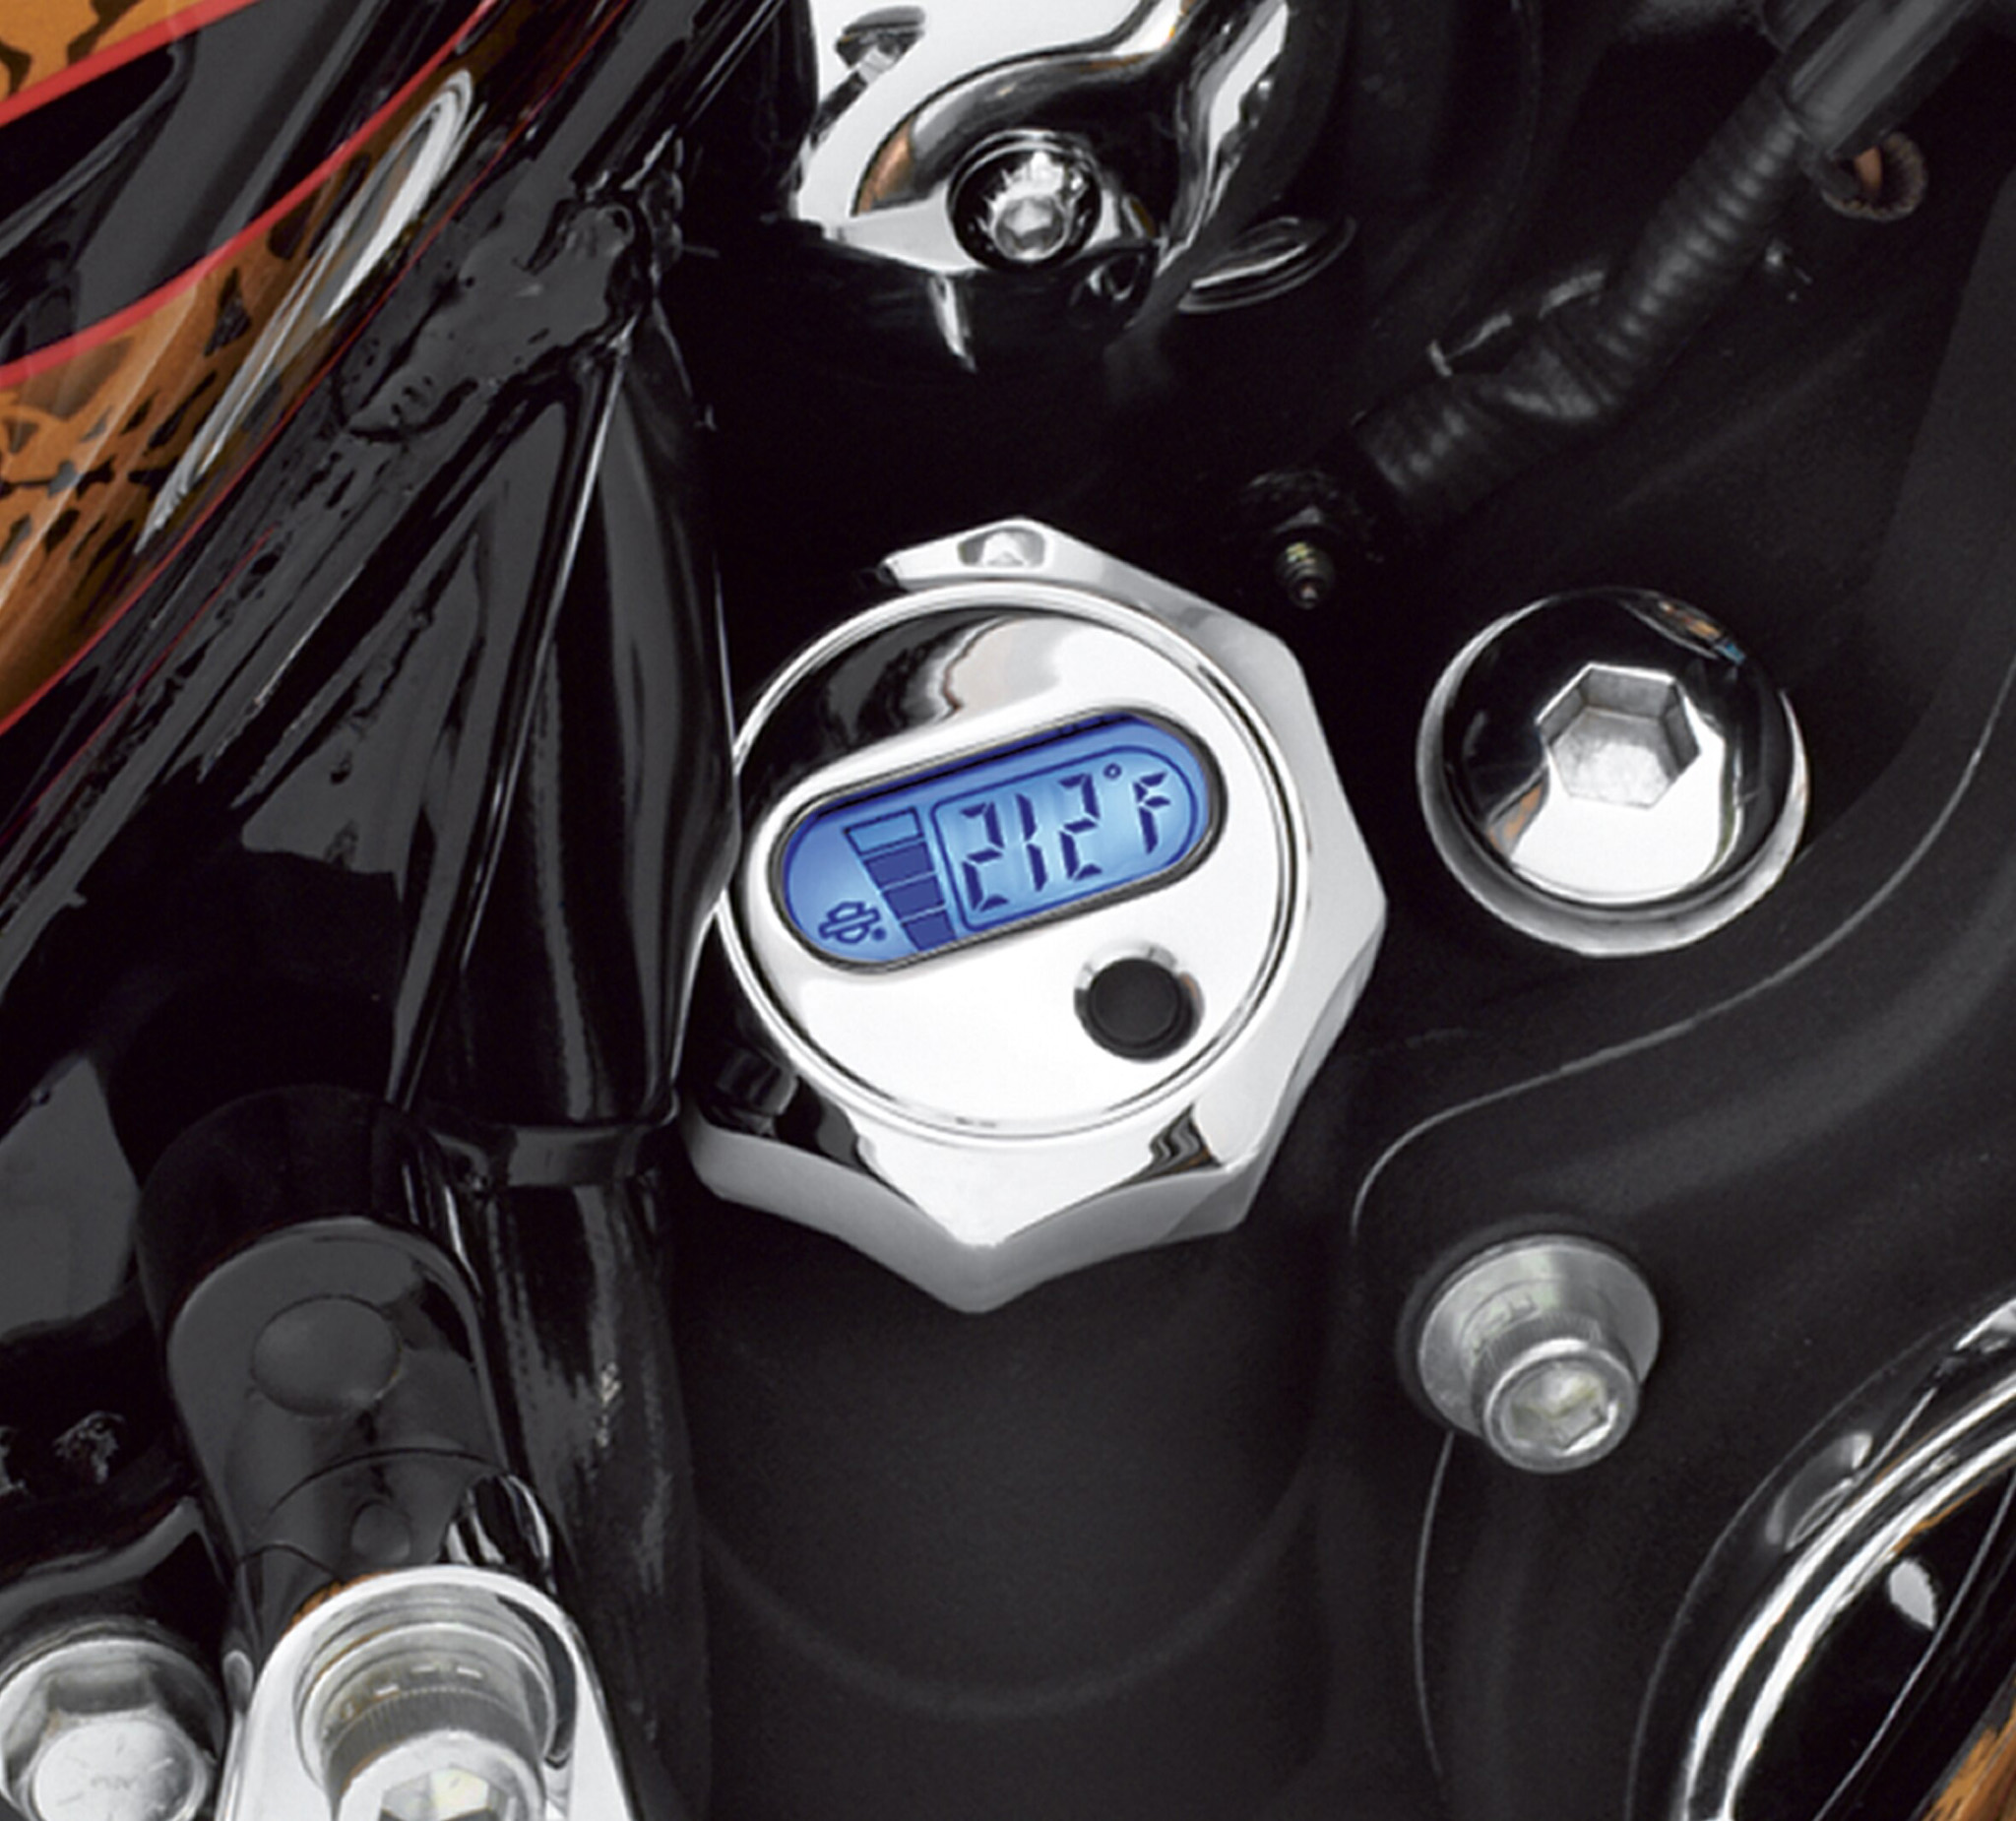 Jauge De Niveau Et De Temperature D Huile Avec Affichage Lcd Retroeclaire Chrome 62700005a Harley Davidson France